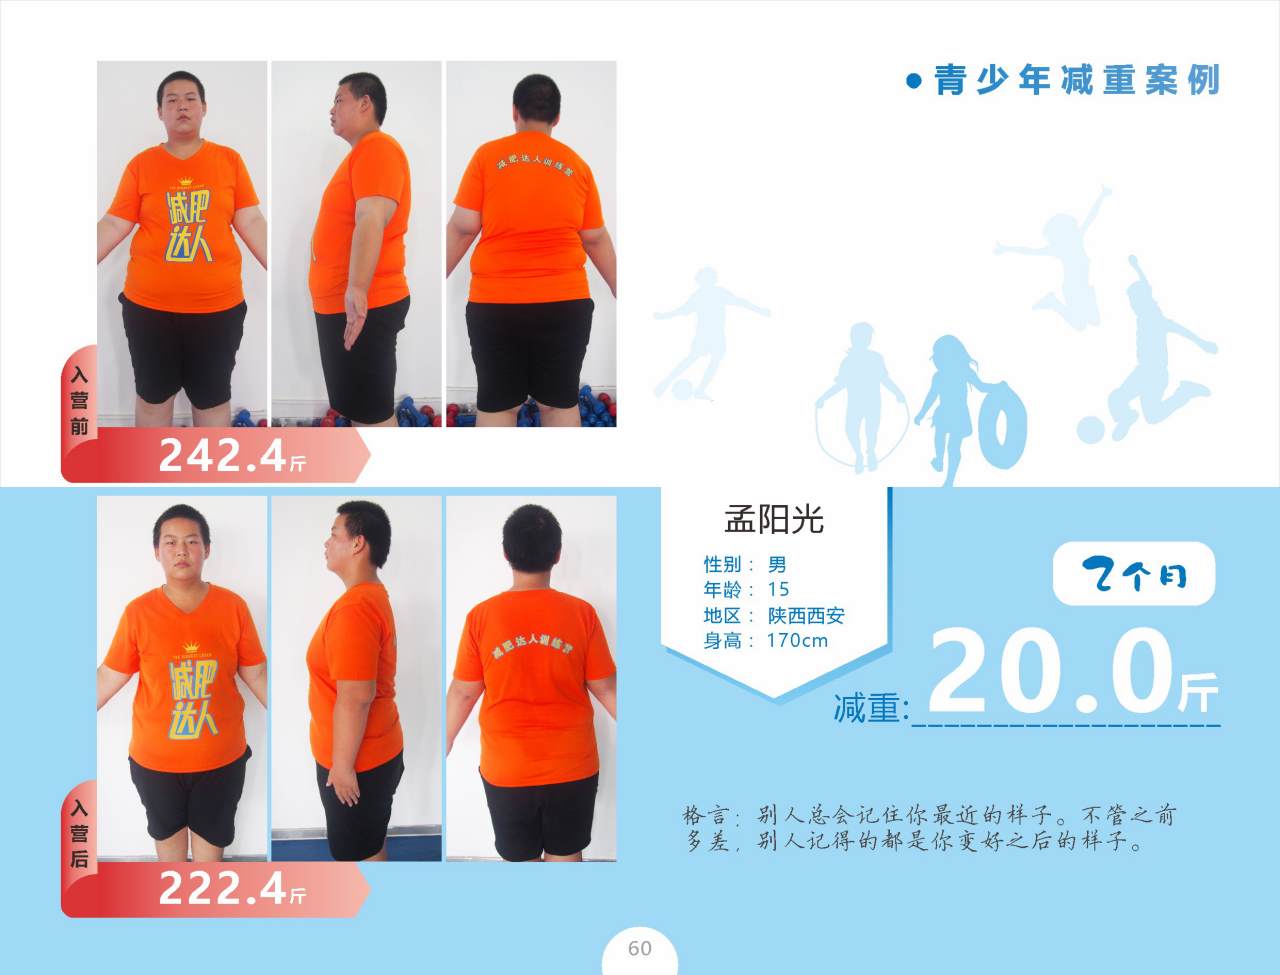 减肥达人孟阳光2个月瘦20斤